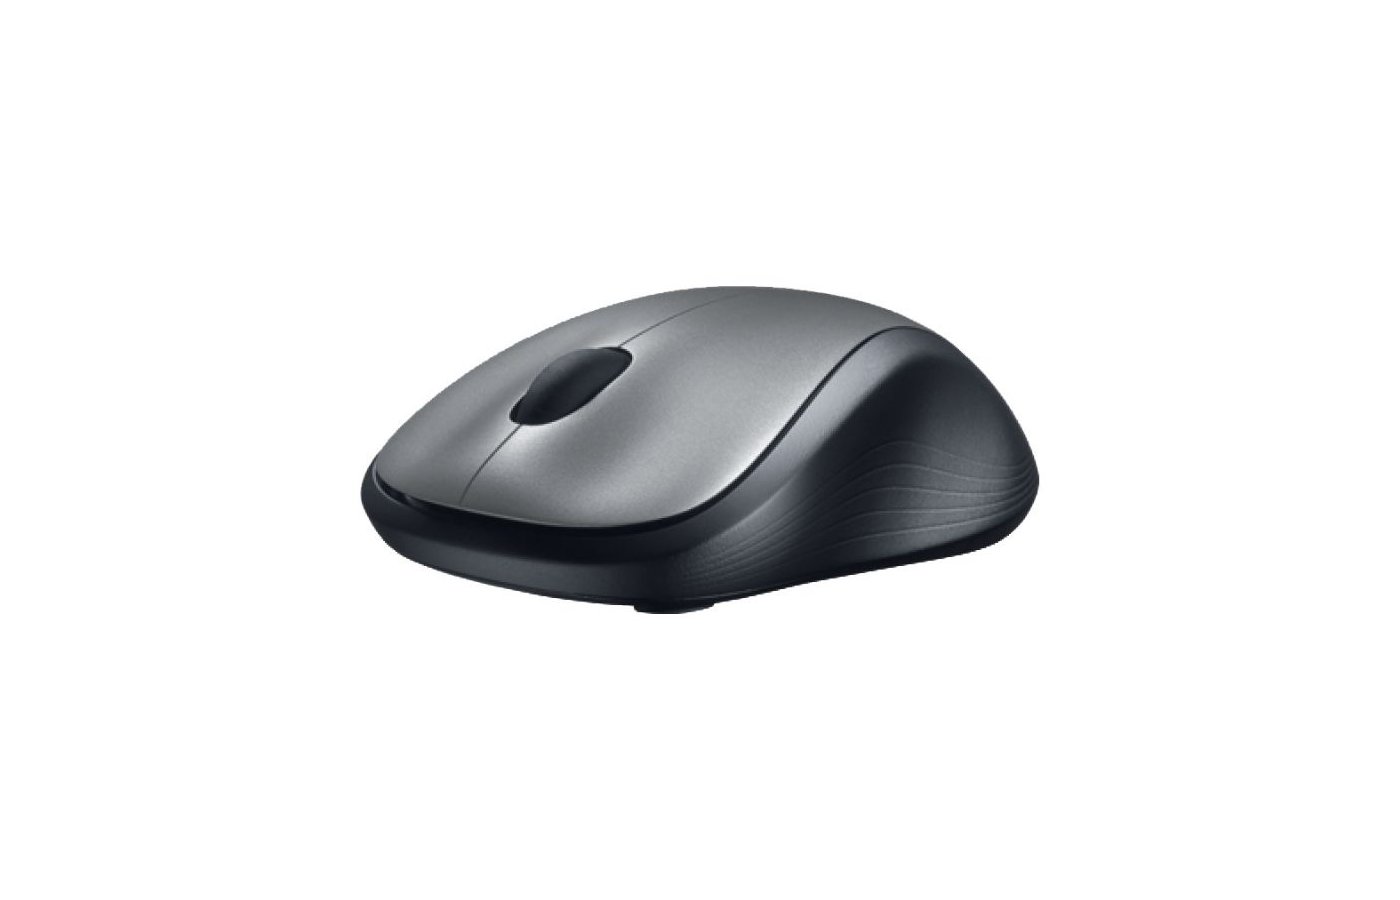 Мышь Logitech m310 Black USB. Логитеч мышка беспроводная офисная. Мышь беспроводная для ноутбука Лоджитек цветная. Мышь Omiz Bluetooth Card-sized Mouse Grey. Беспроводная мышь m310